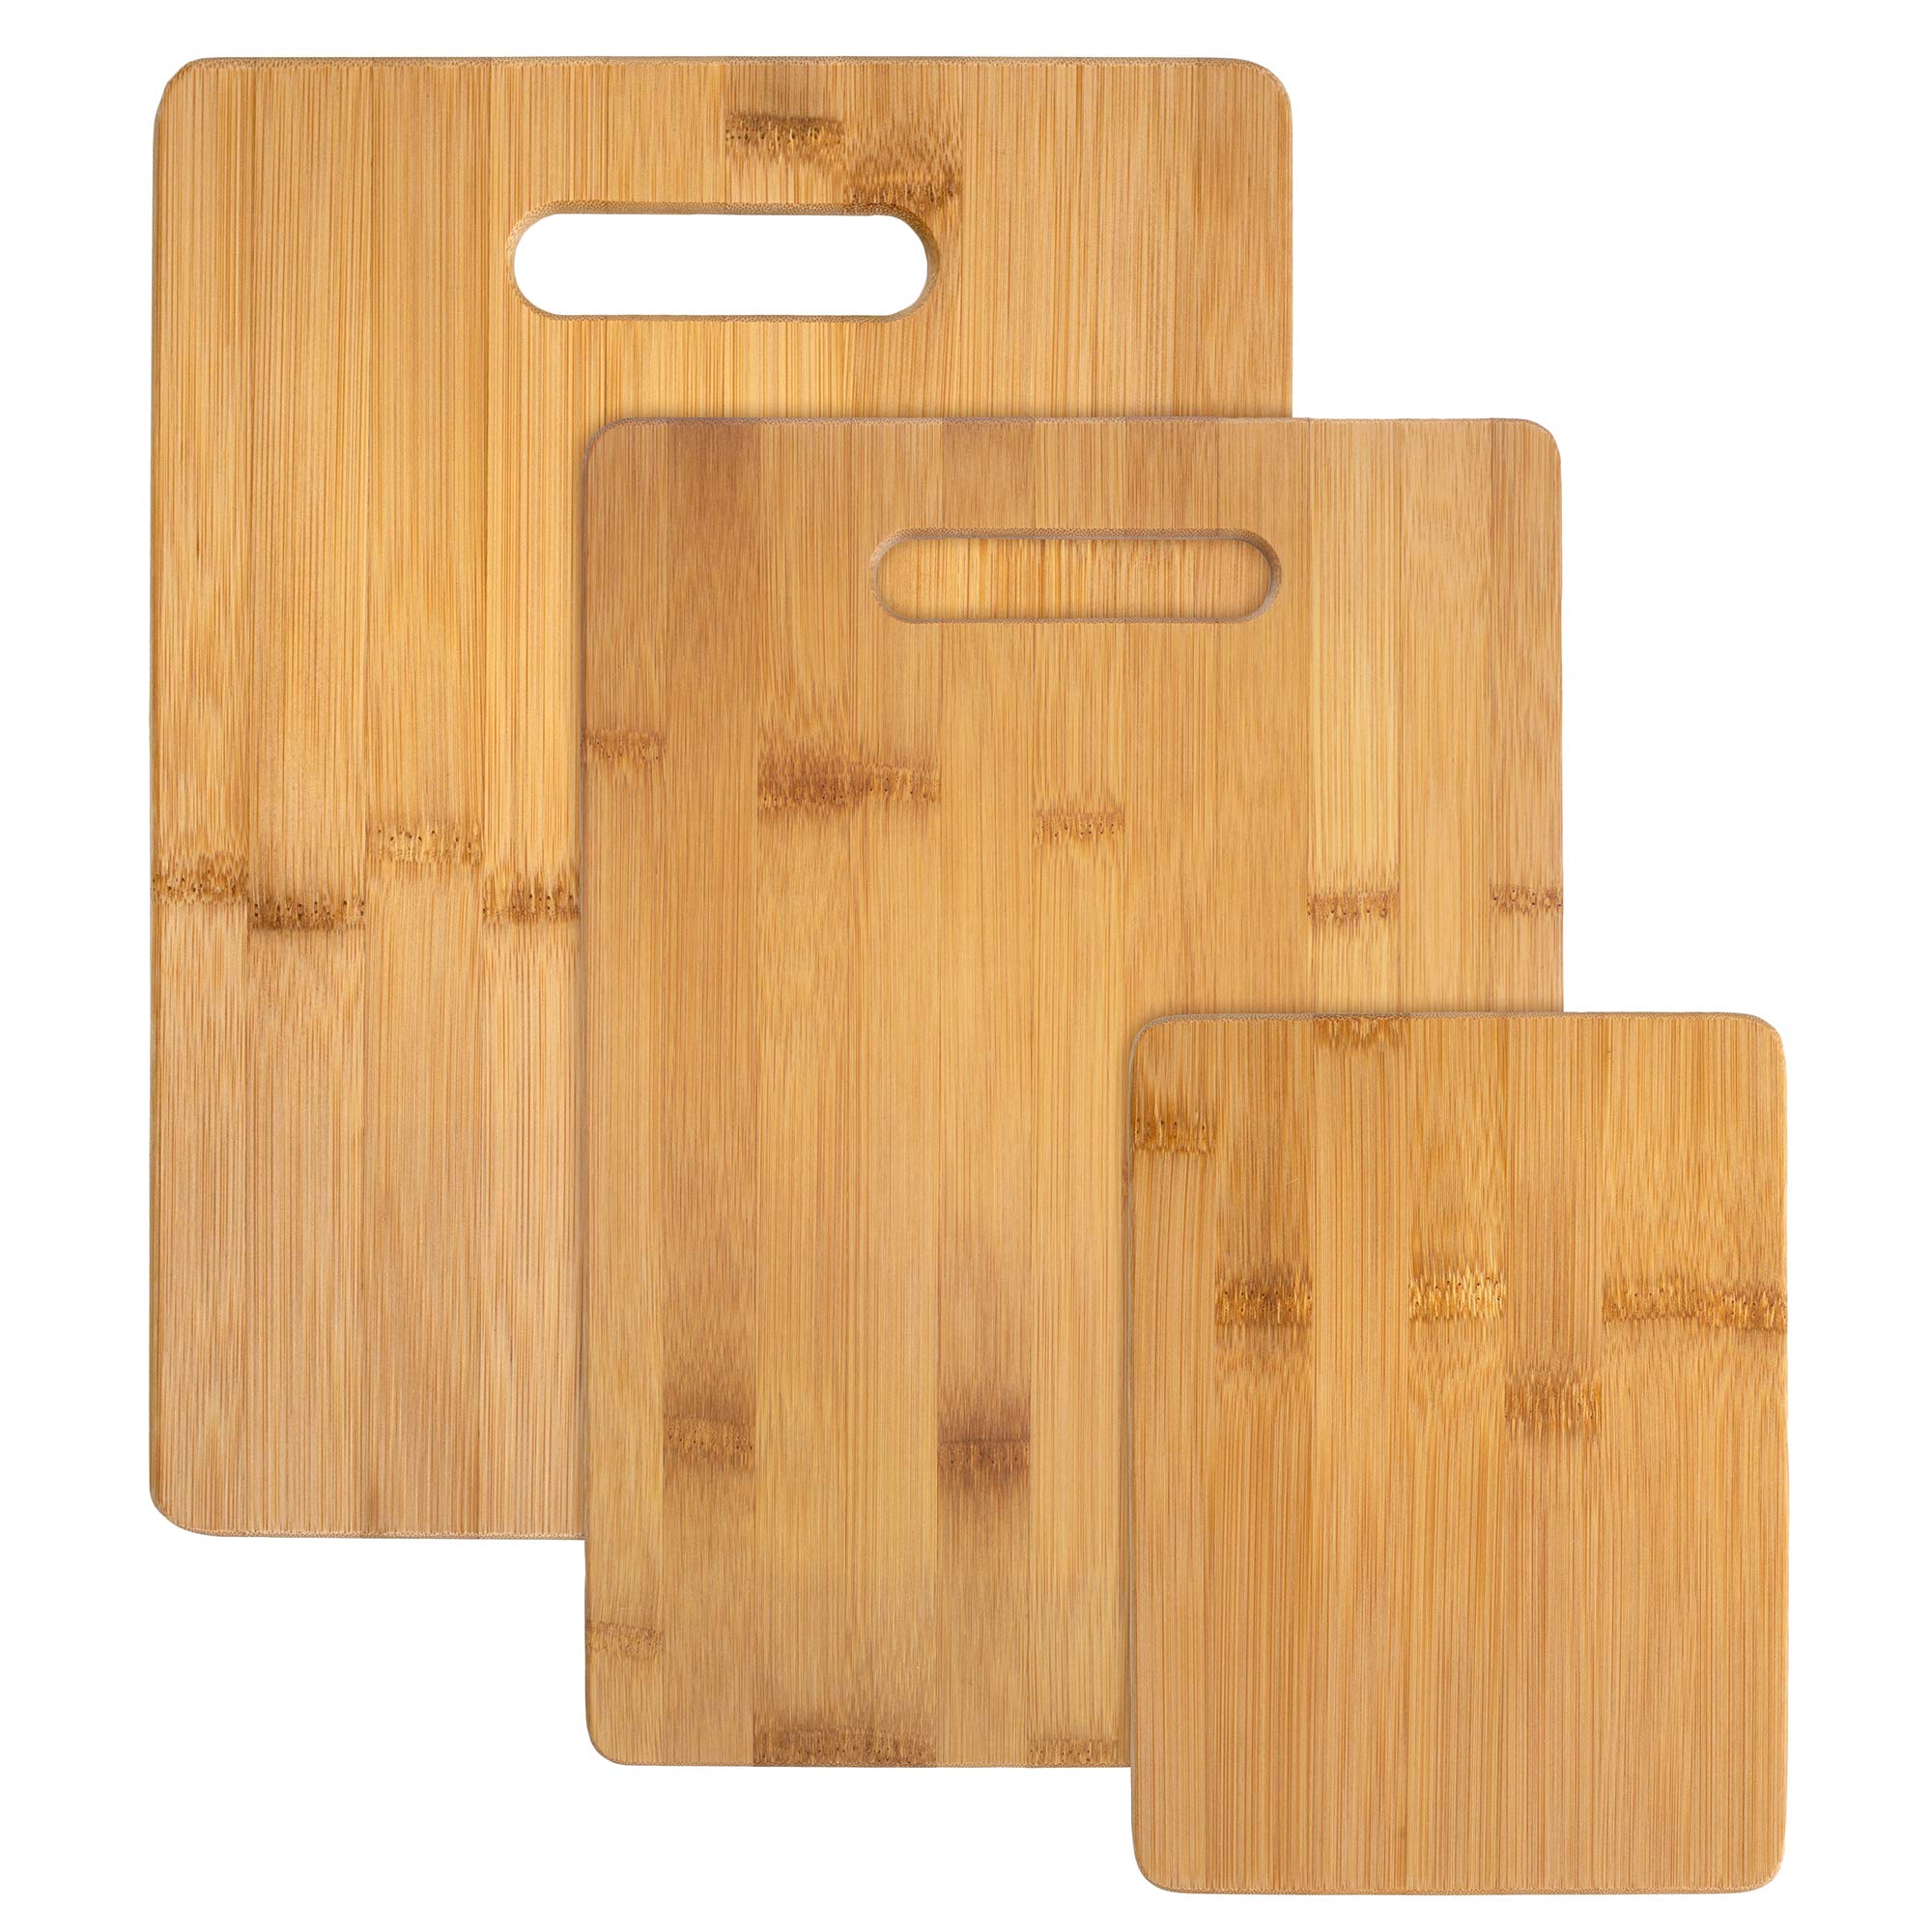 Shangrun 3-Piece Bamboo Cutting Board Set